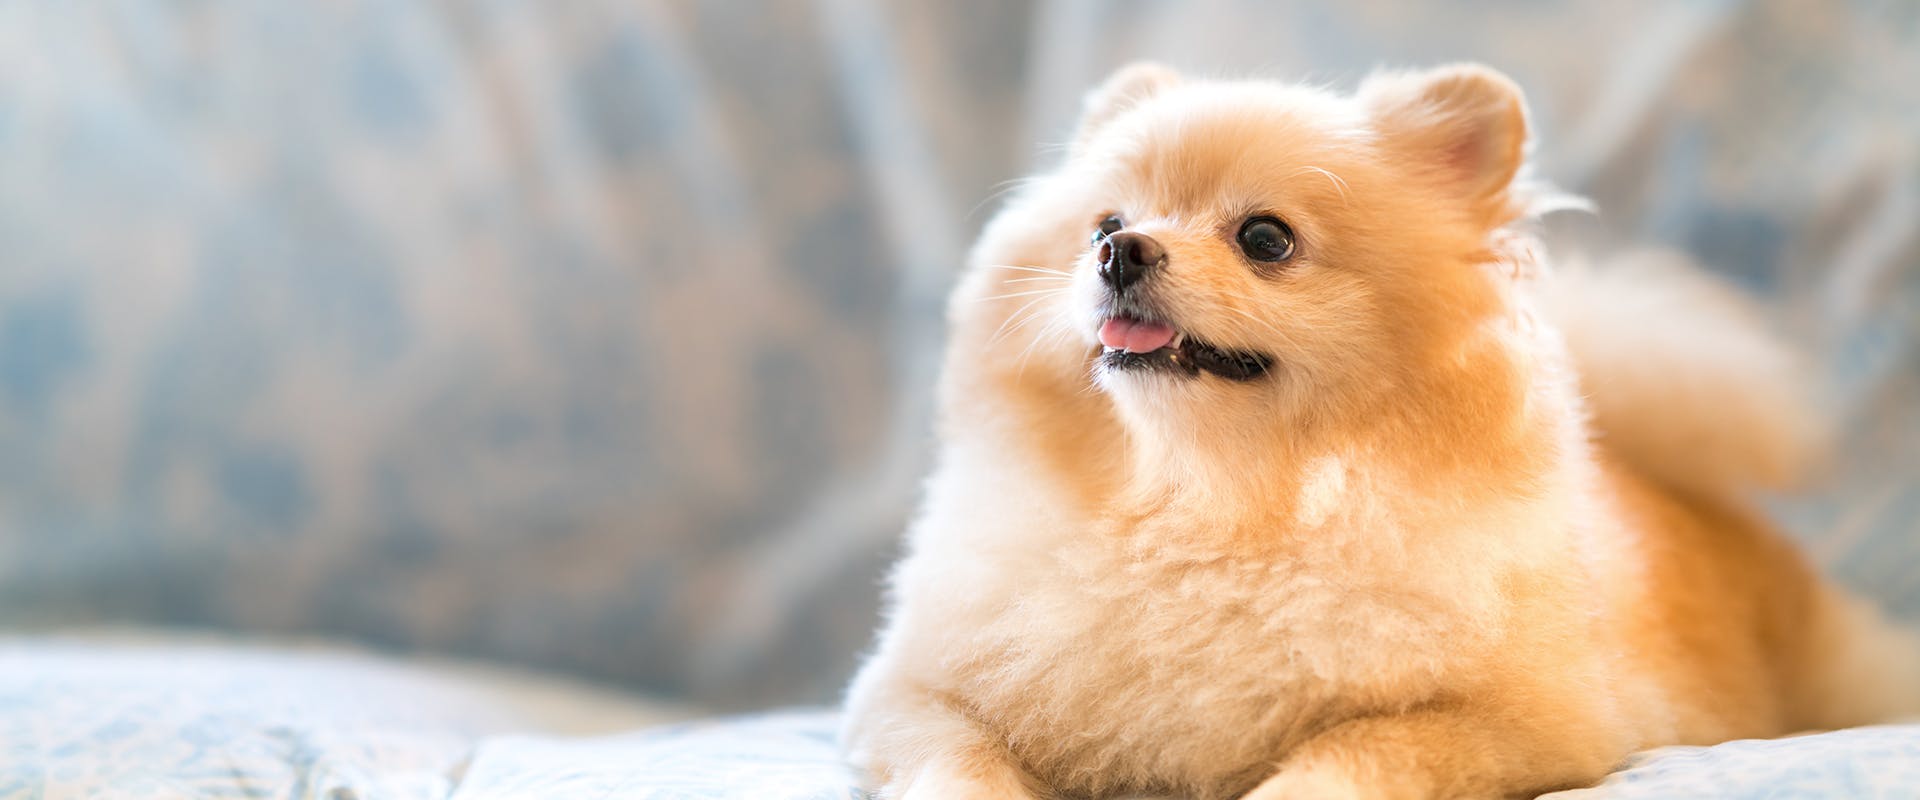 A fluffy Pomeranian dog sitting on a sofa